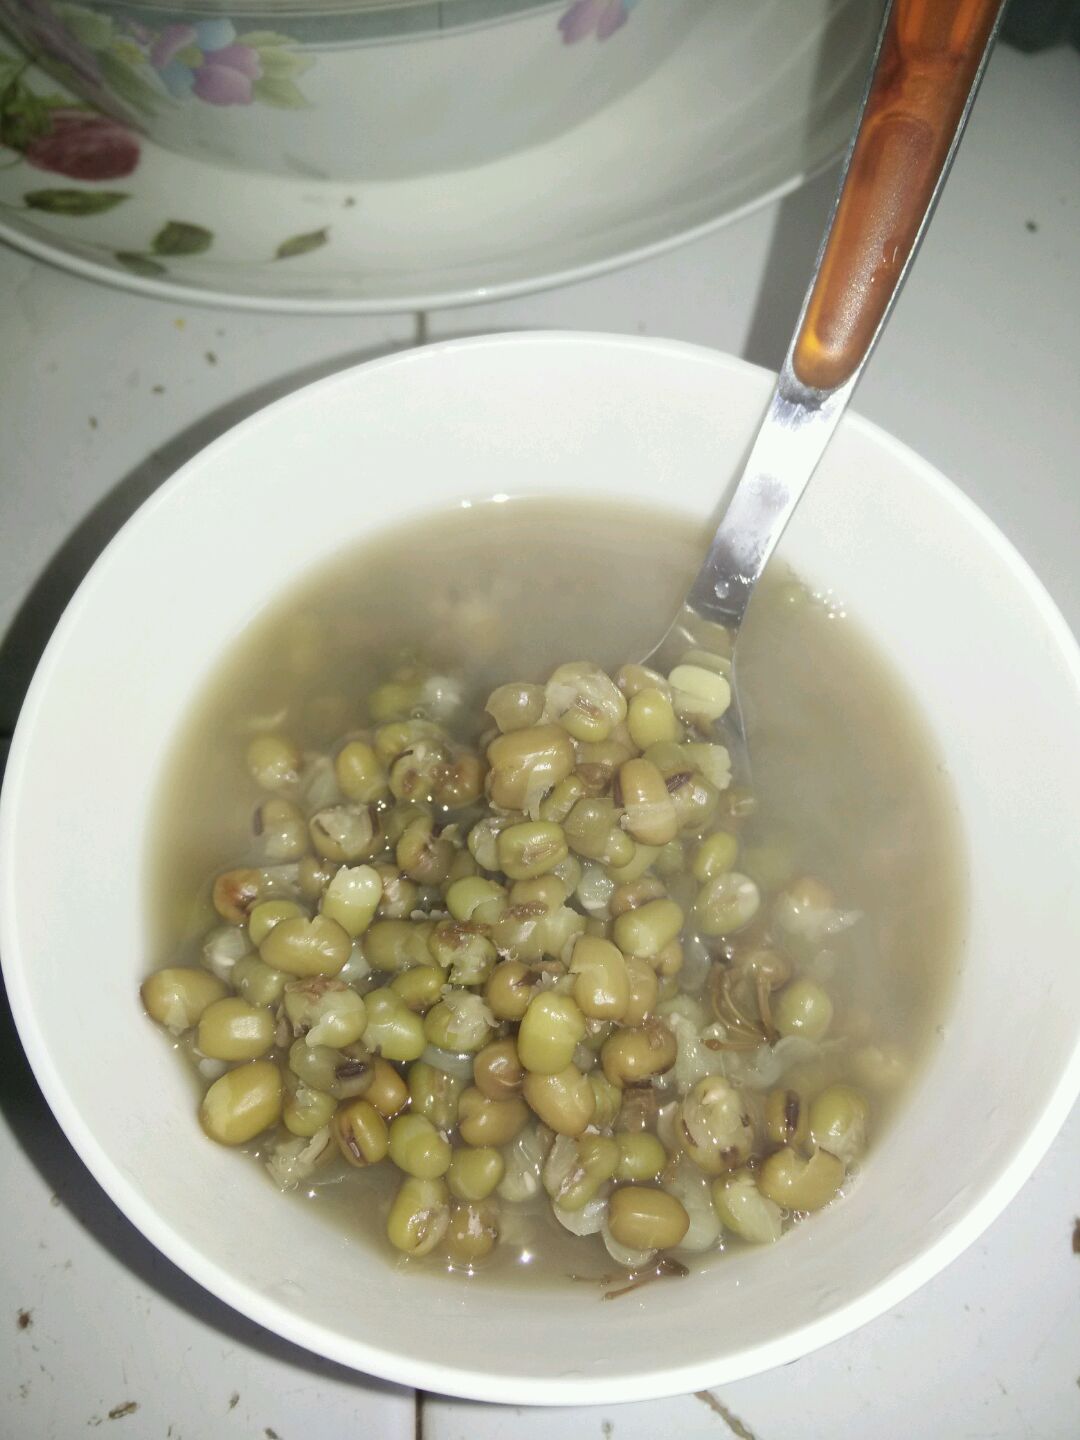 绿豆汤的正确做法